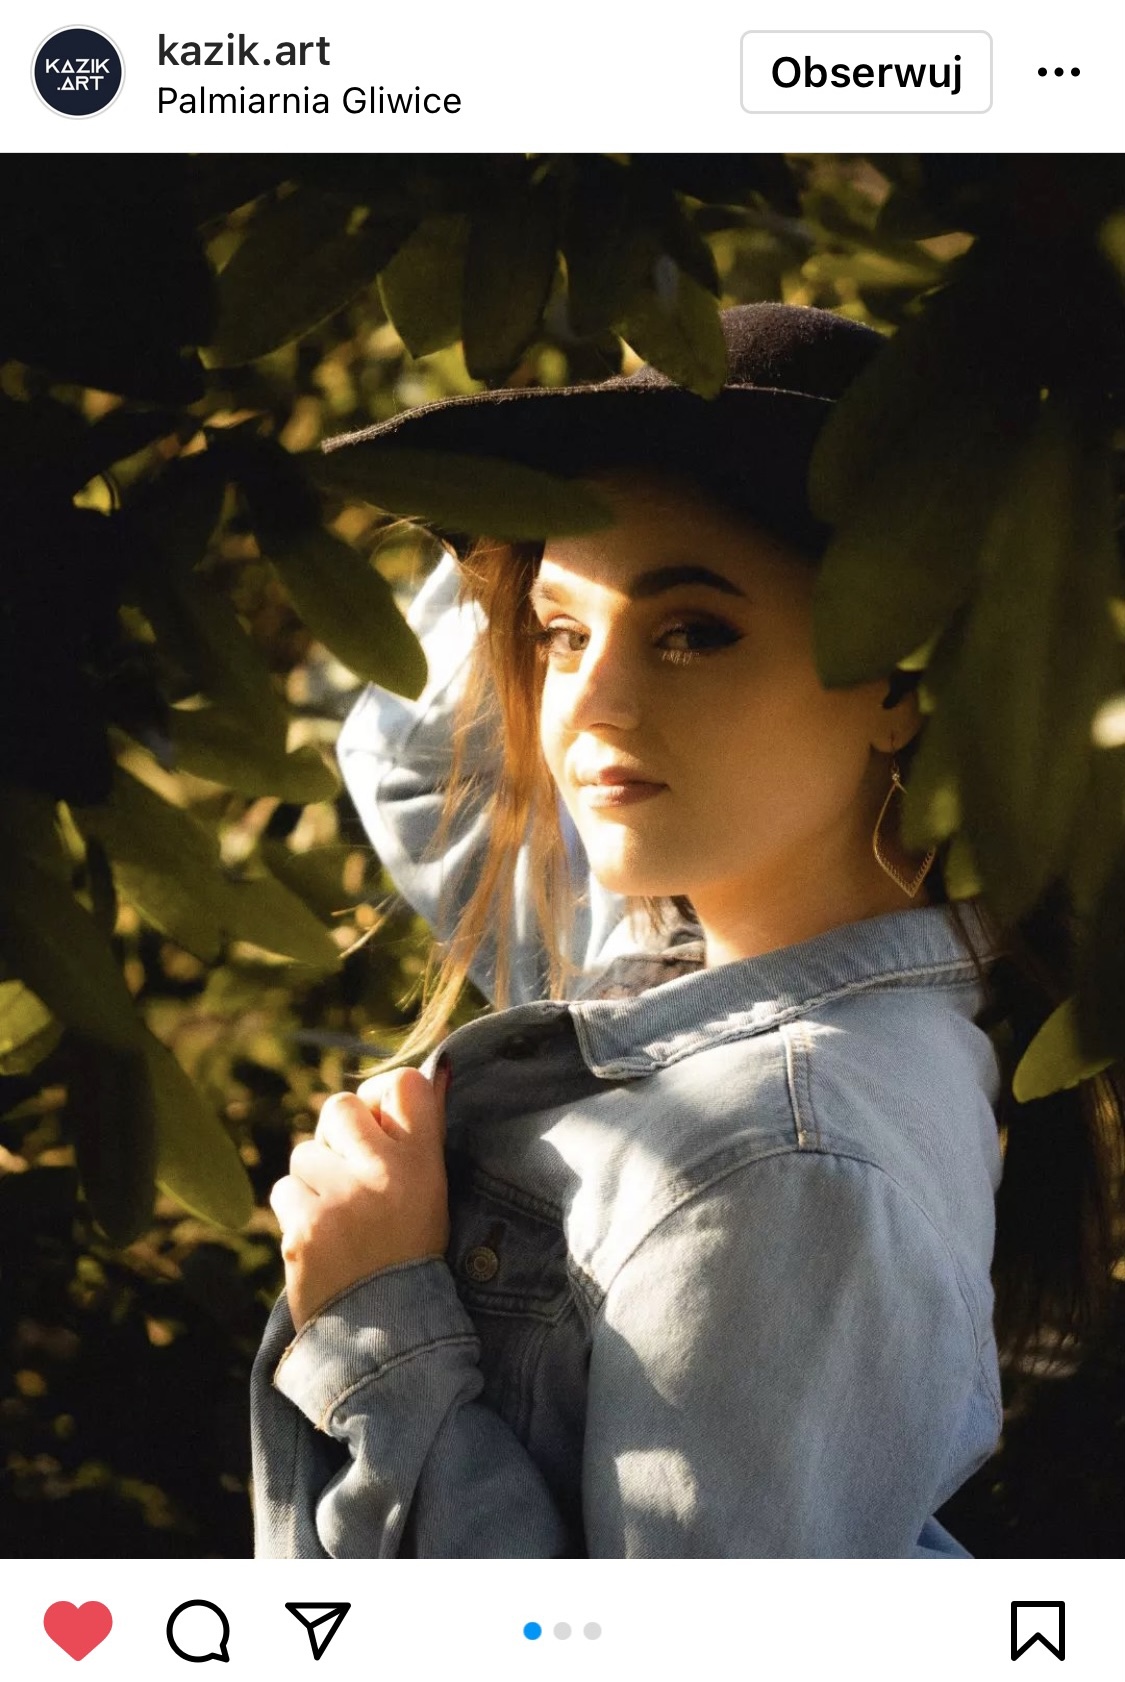 Dziewczyna stojąca w kapeluszu pośród drzewa. W twarz świeci jej słońce.